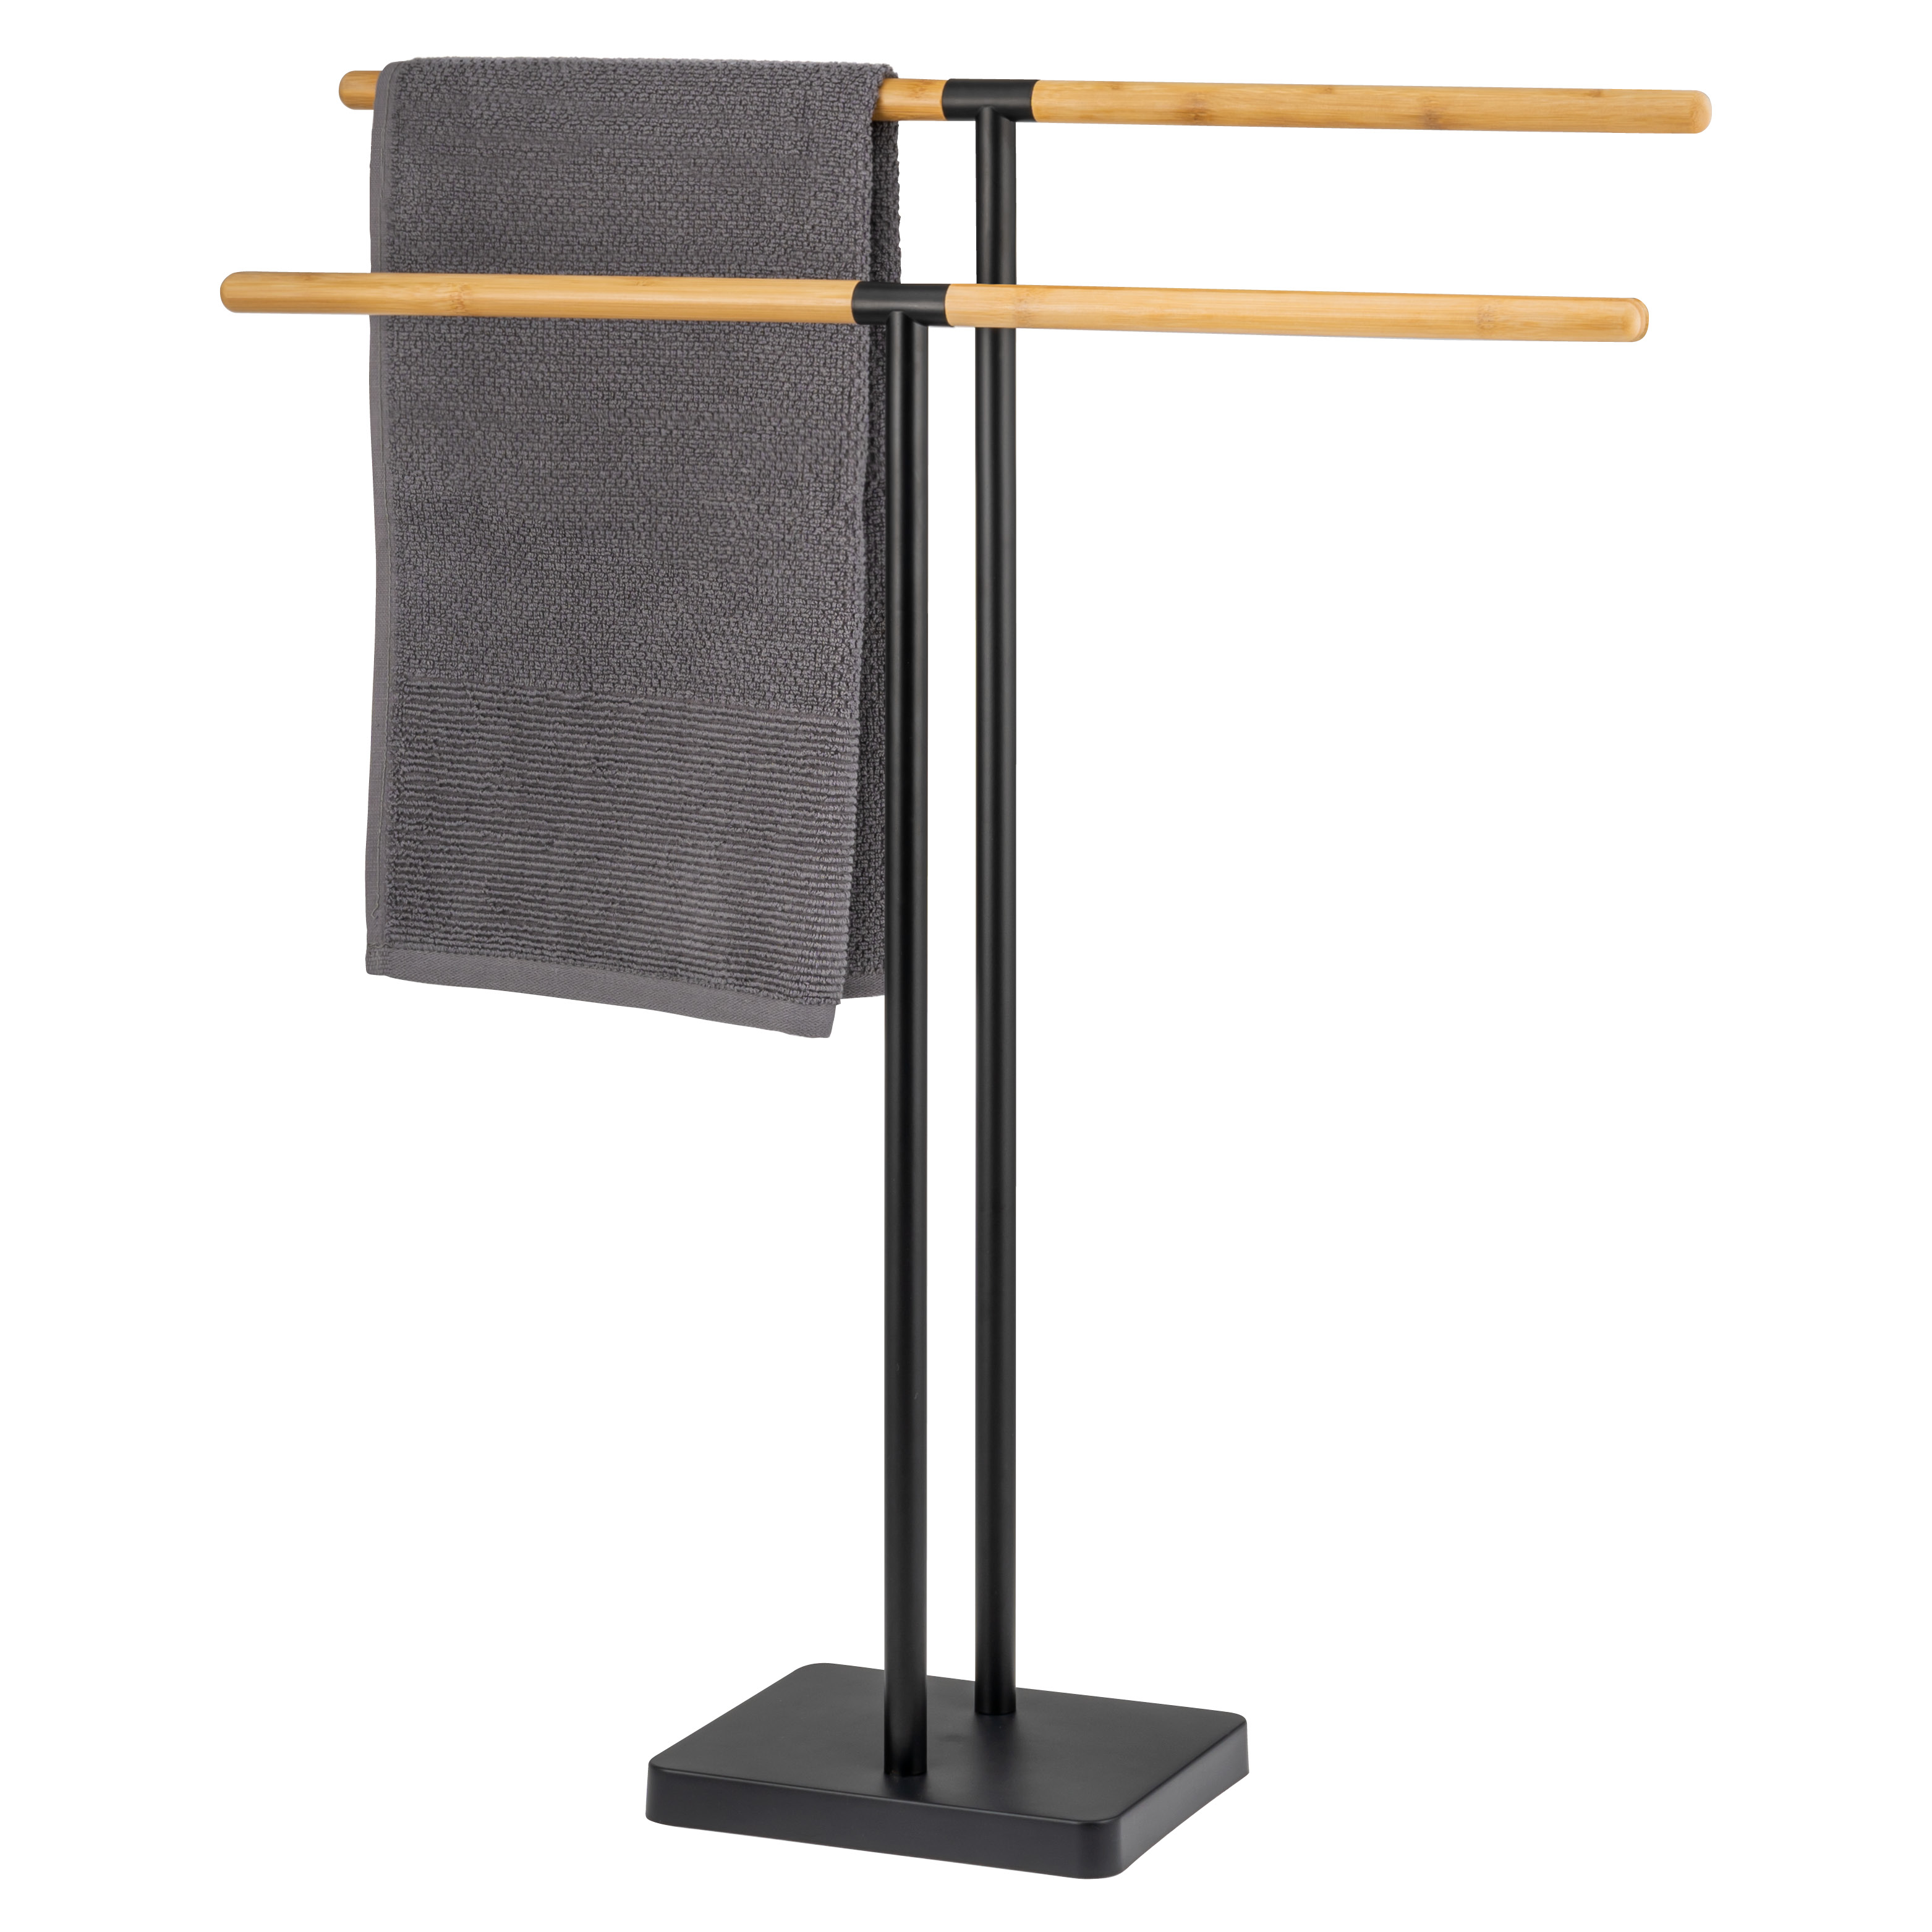 Stand-Handtuchhalter freistehend, 2 Stangen, Handtuchständer, Bambus/Metall, schwarz